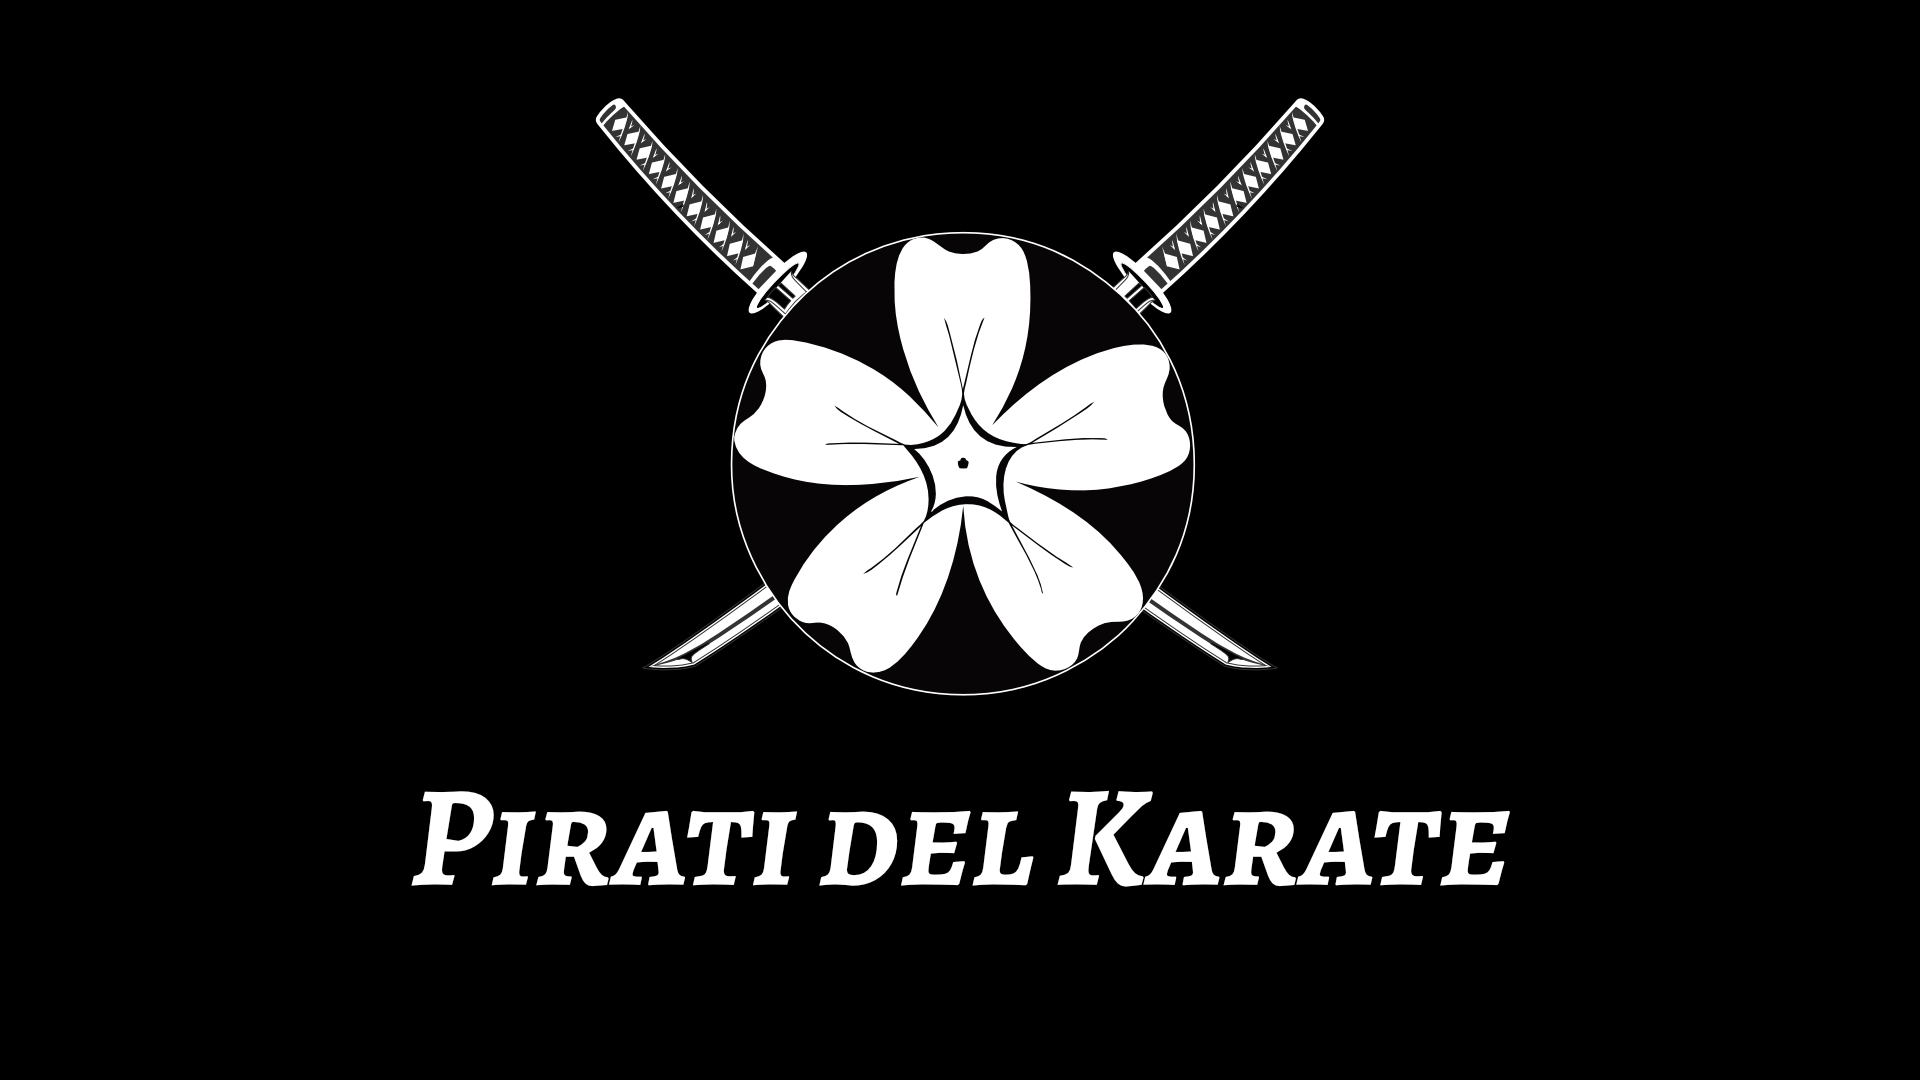 Pirati del karate è il podcast della Repubblica Indipendente dei Pirati del Karate